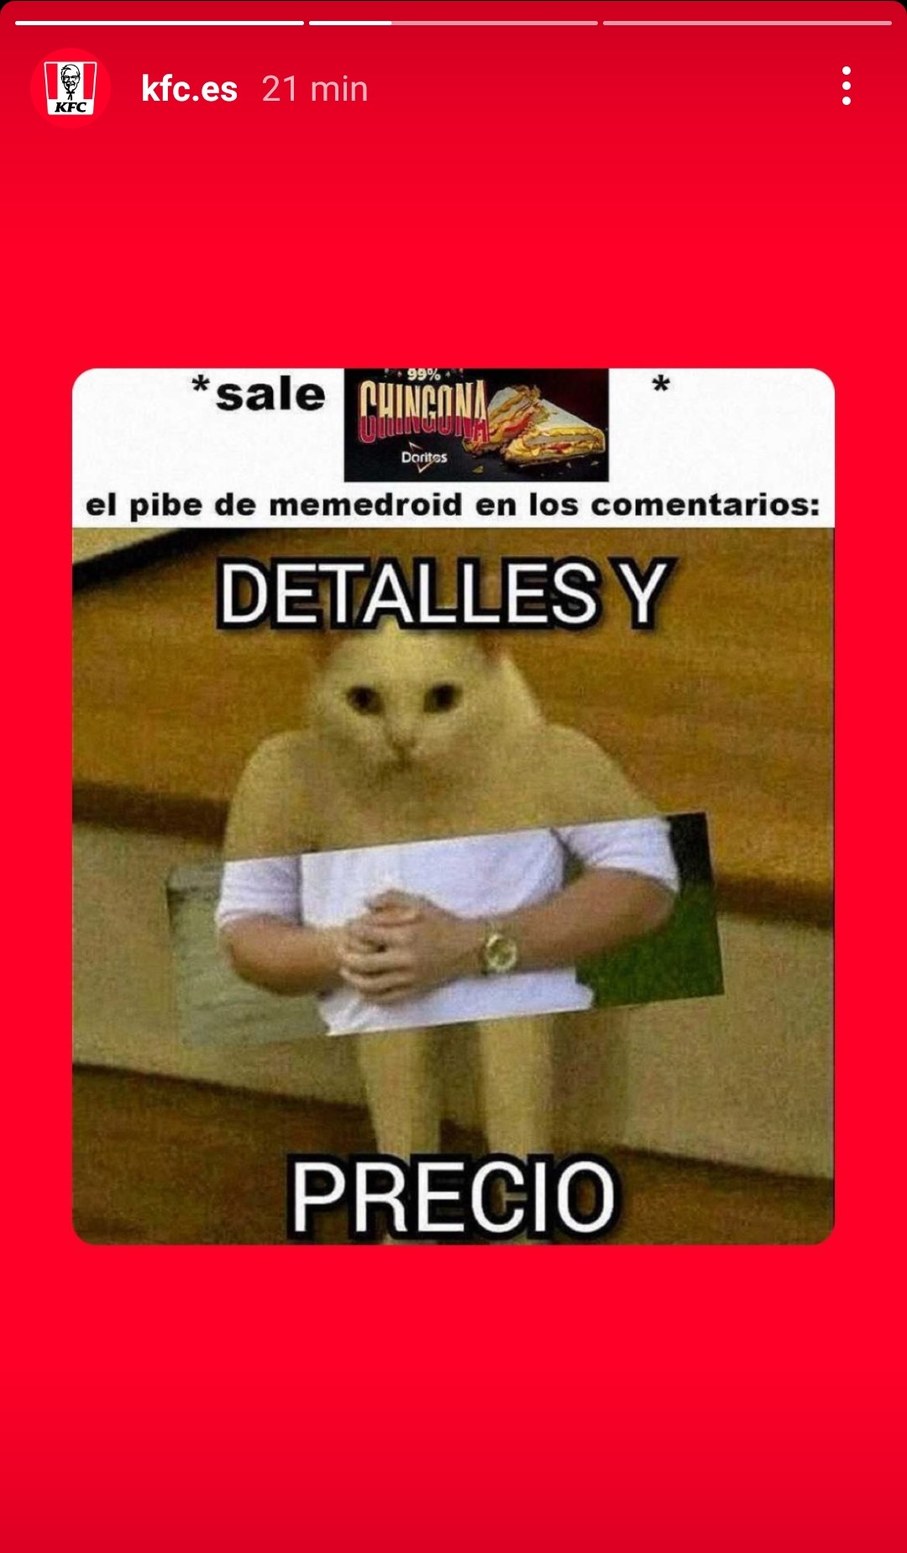 Mejor Uso Telegram, Allá Hay Mas - Meme by NeriMeme2 :) Memedroid